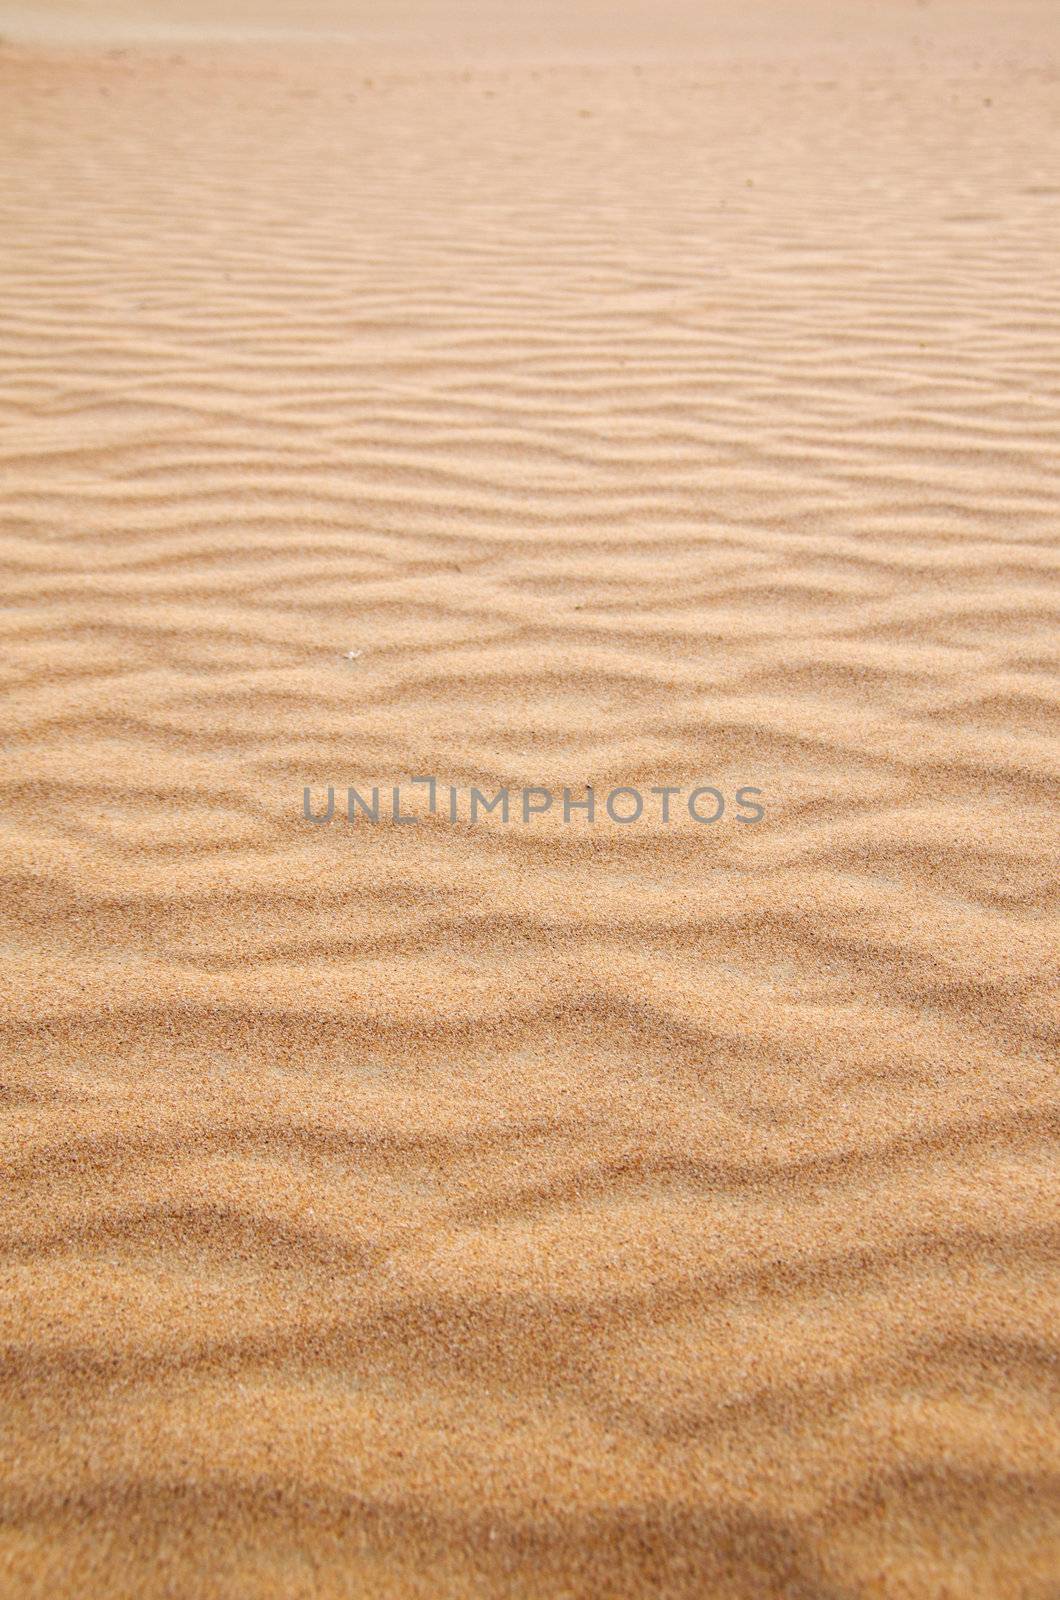 sand texture by Pakhnyushchyy